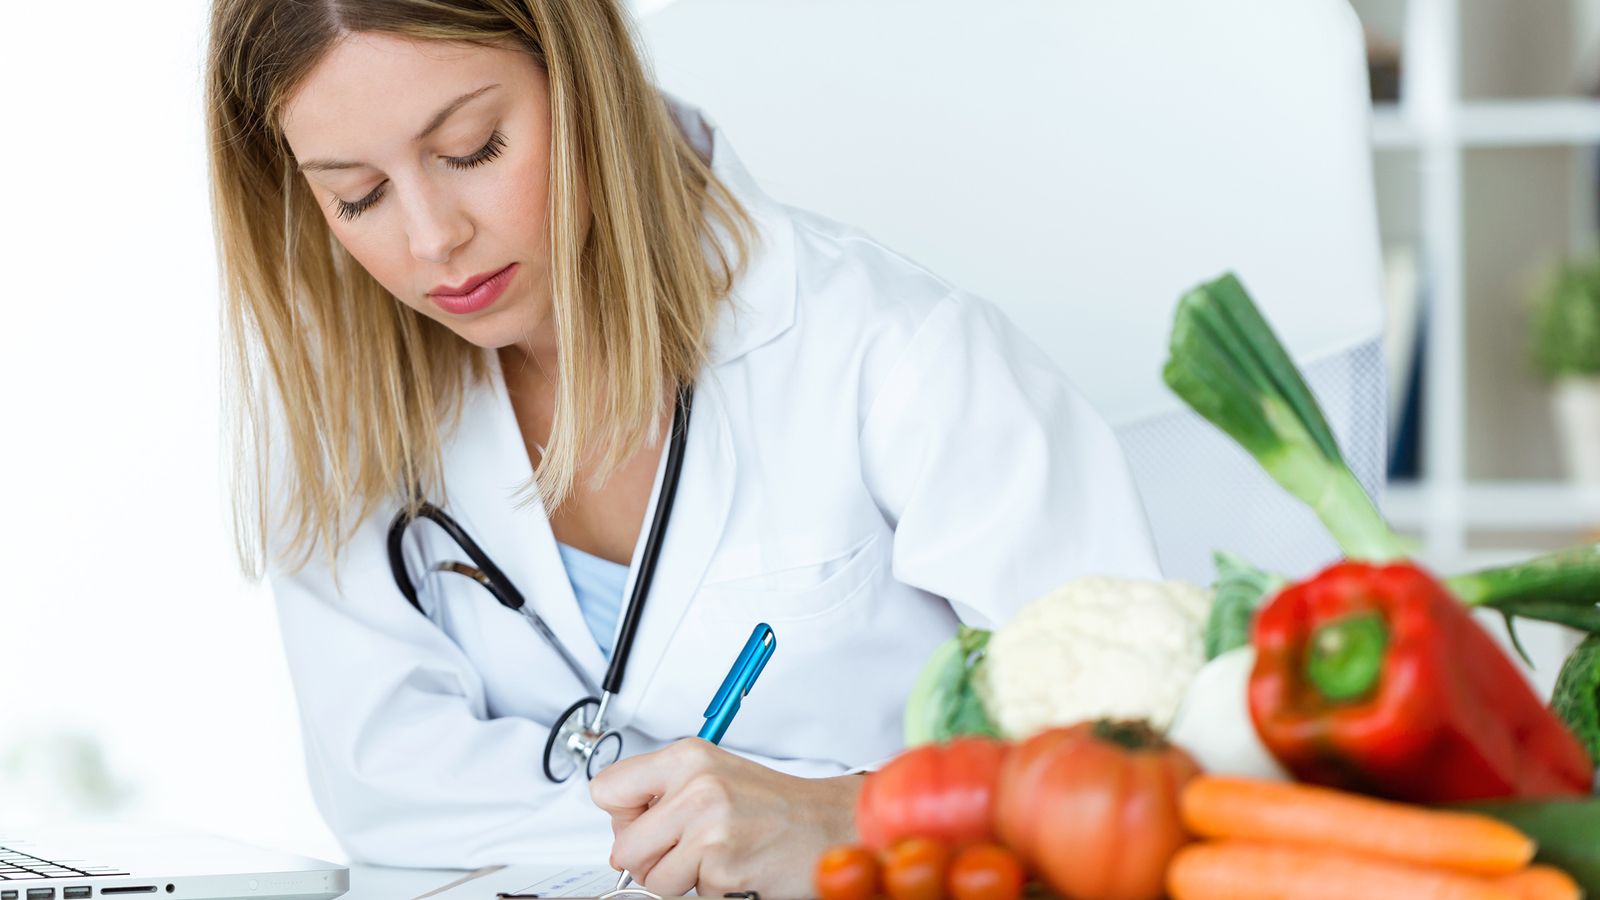 Ärztin füllt ein Formular über gesunde Ernährung aus. Im Vordergrund: Gemüse